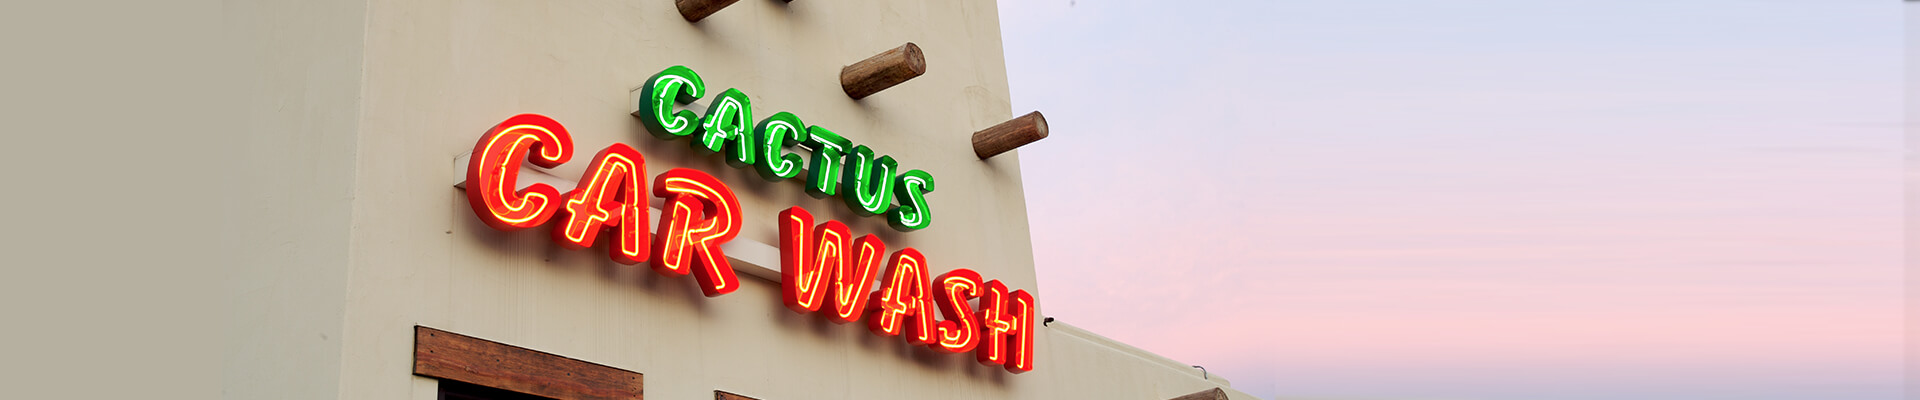 Cactus Car Wash Milton Voted 2013 Community Favorite!